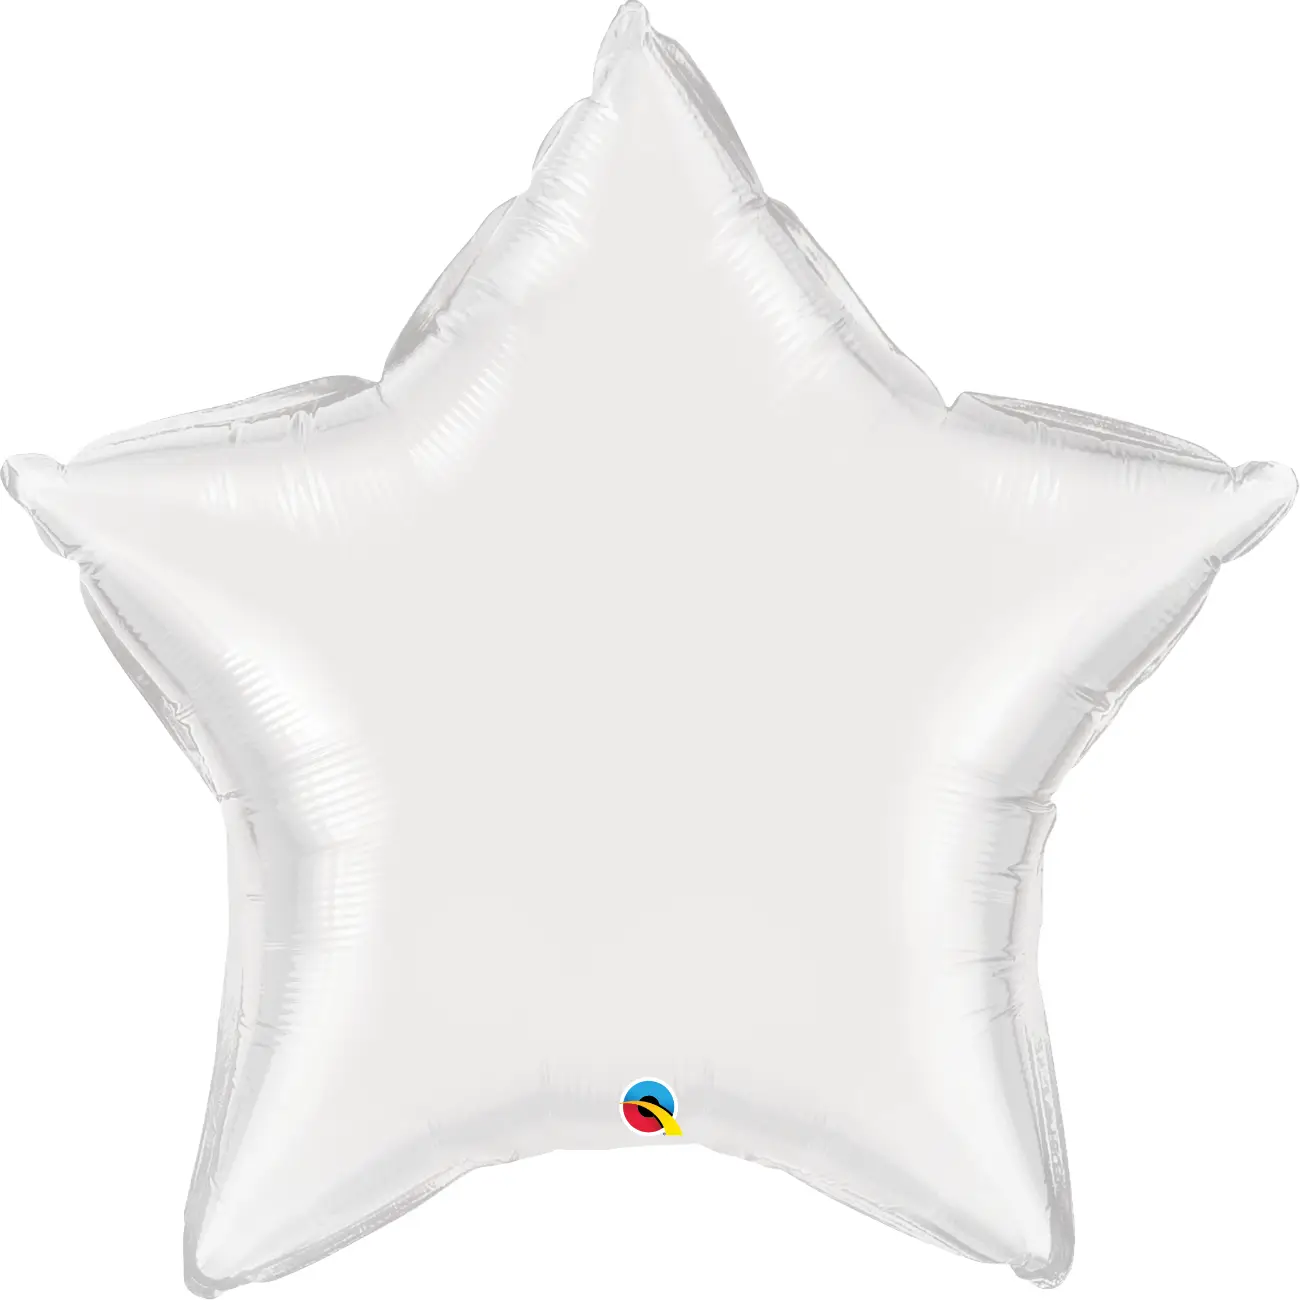 36” foil star shape- white